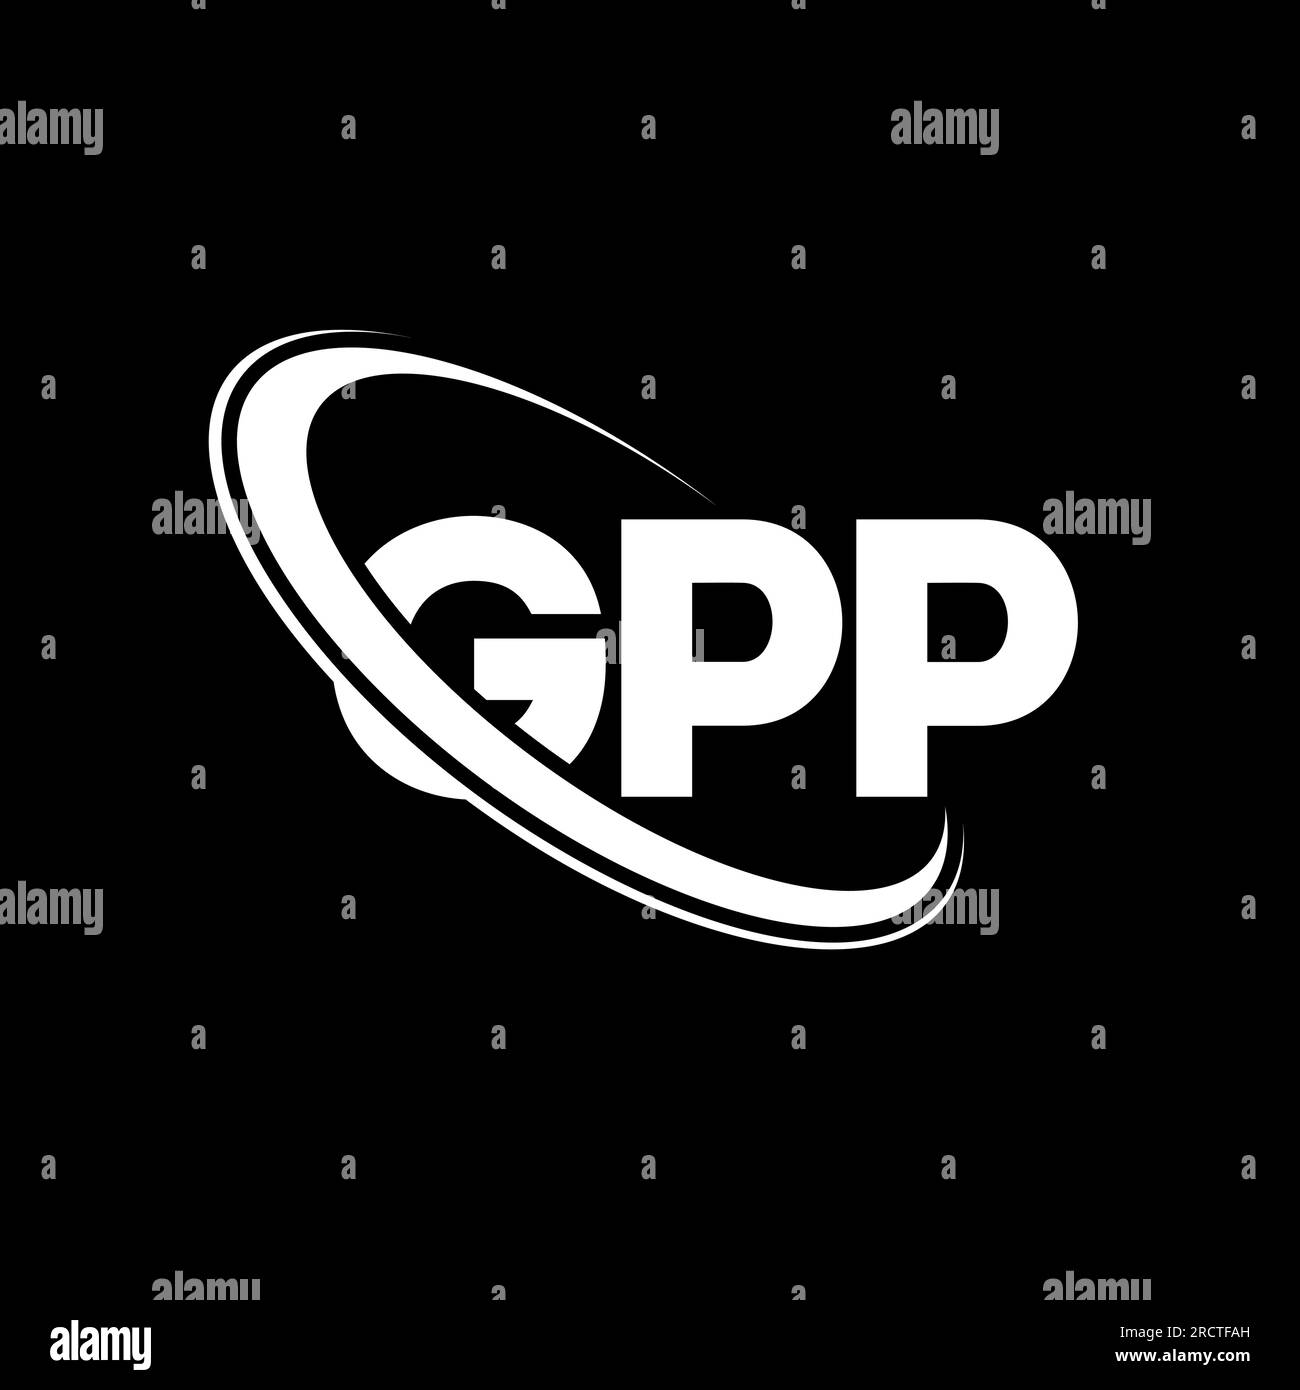 GPM; logo GPM; lettera GPM; logo cerchio GPM; vettore GPM; Icona GPM; logo aziendale GPM; logo tecnico GPM; logo marketing GPM; design GPM; Font GPM; logo GPM Illustrazione Vettoriale